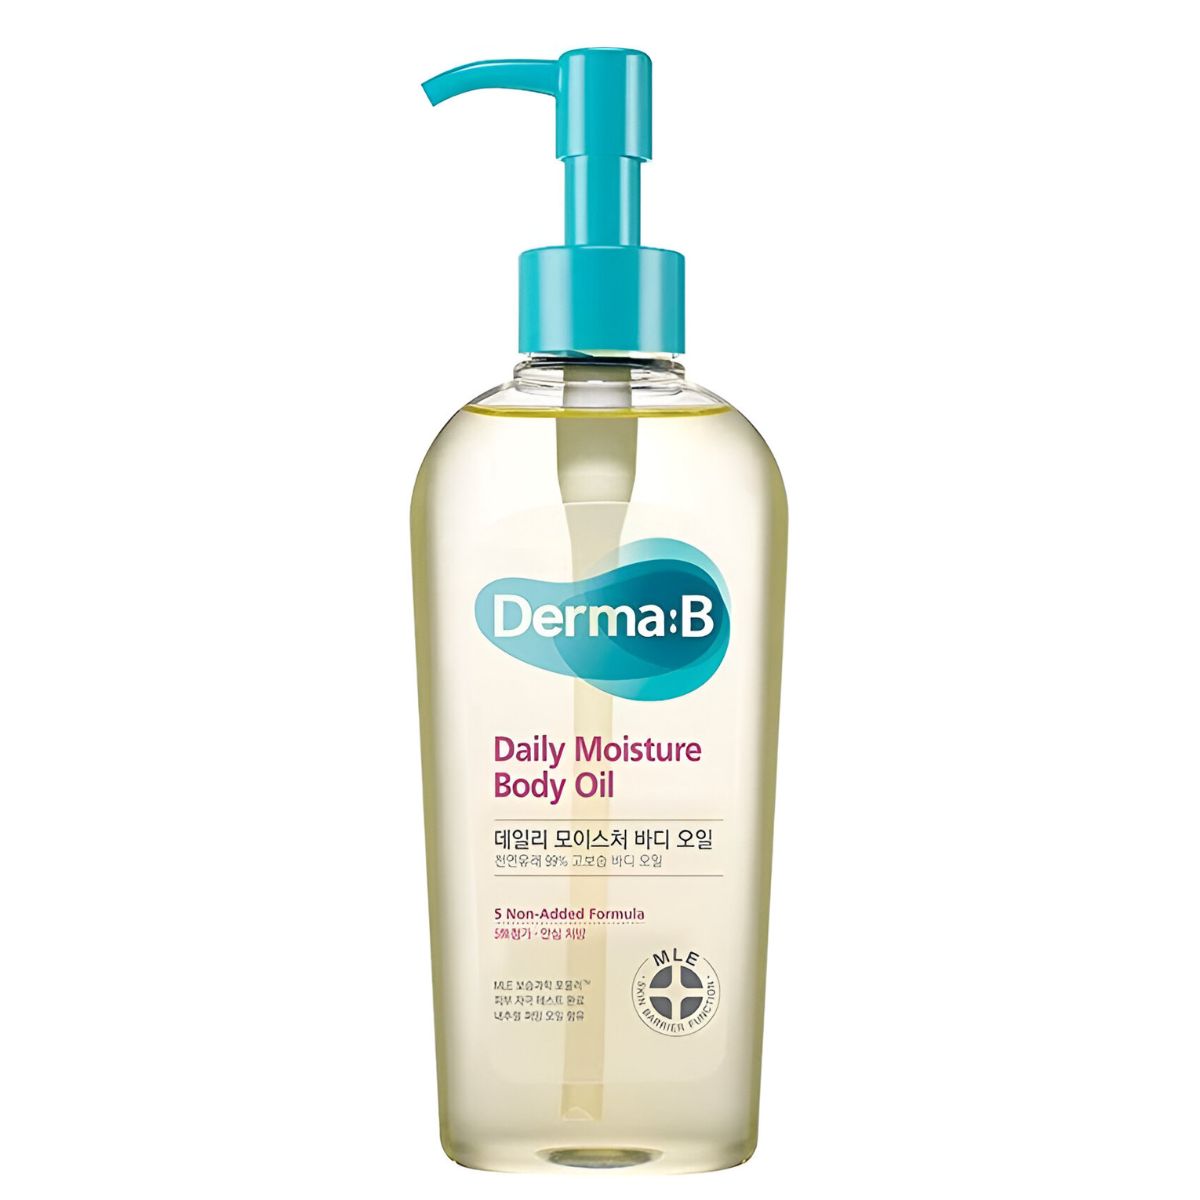 Ламеллярное парфюмированное масло для тела Derma:B Daily Moisture Body Oil arriviste парфюмированное масло для тела с шиммером spicy cherry 50